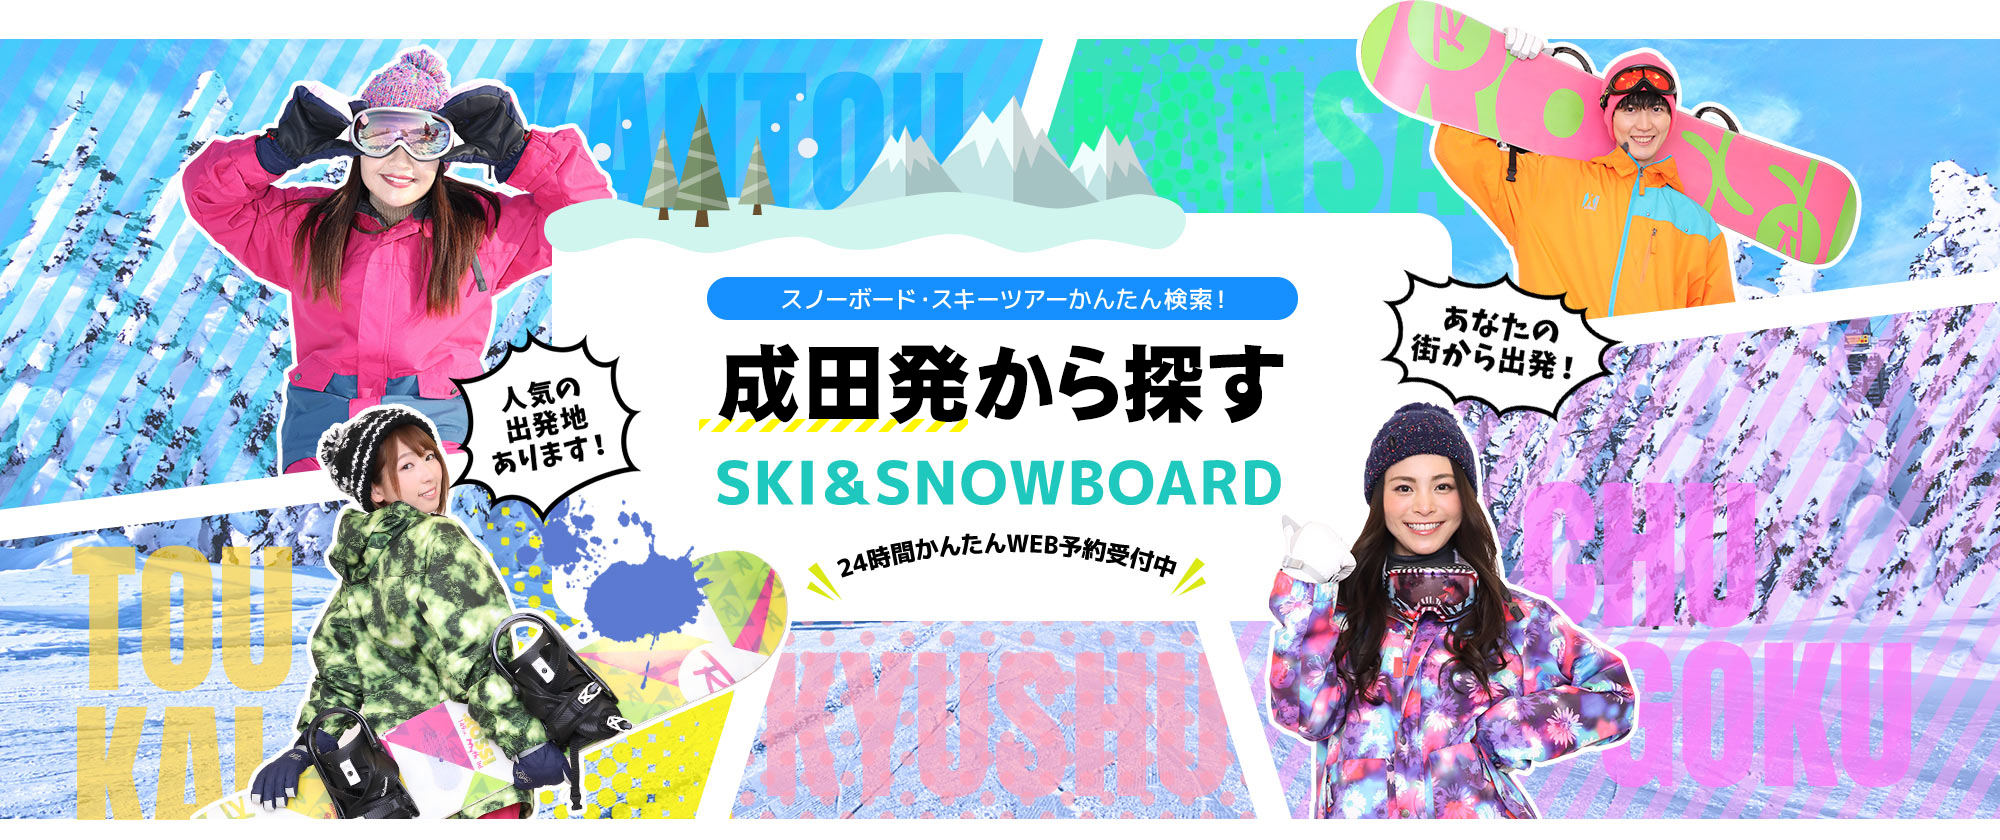 スノーボード・スキーツアーかんたん検索！ 成田発から探す SKI&SNOWBOARD